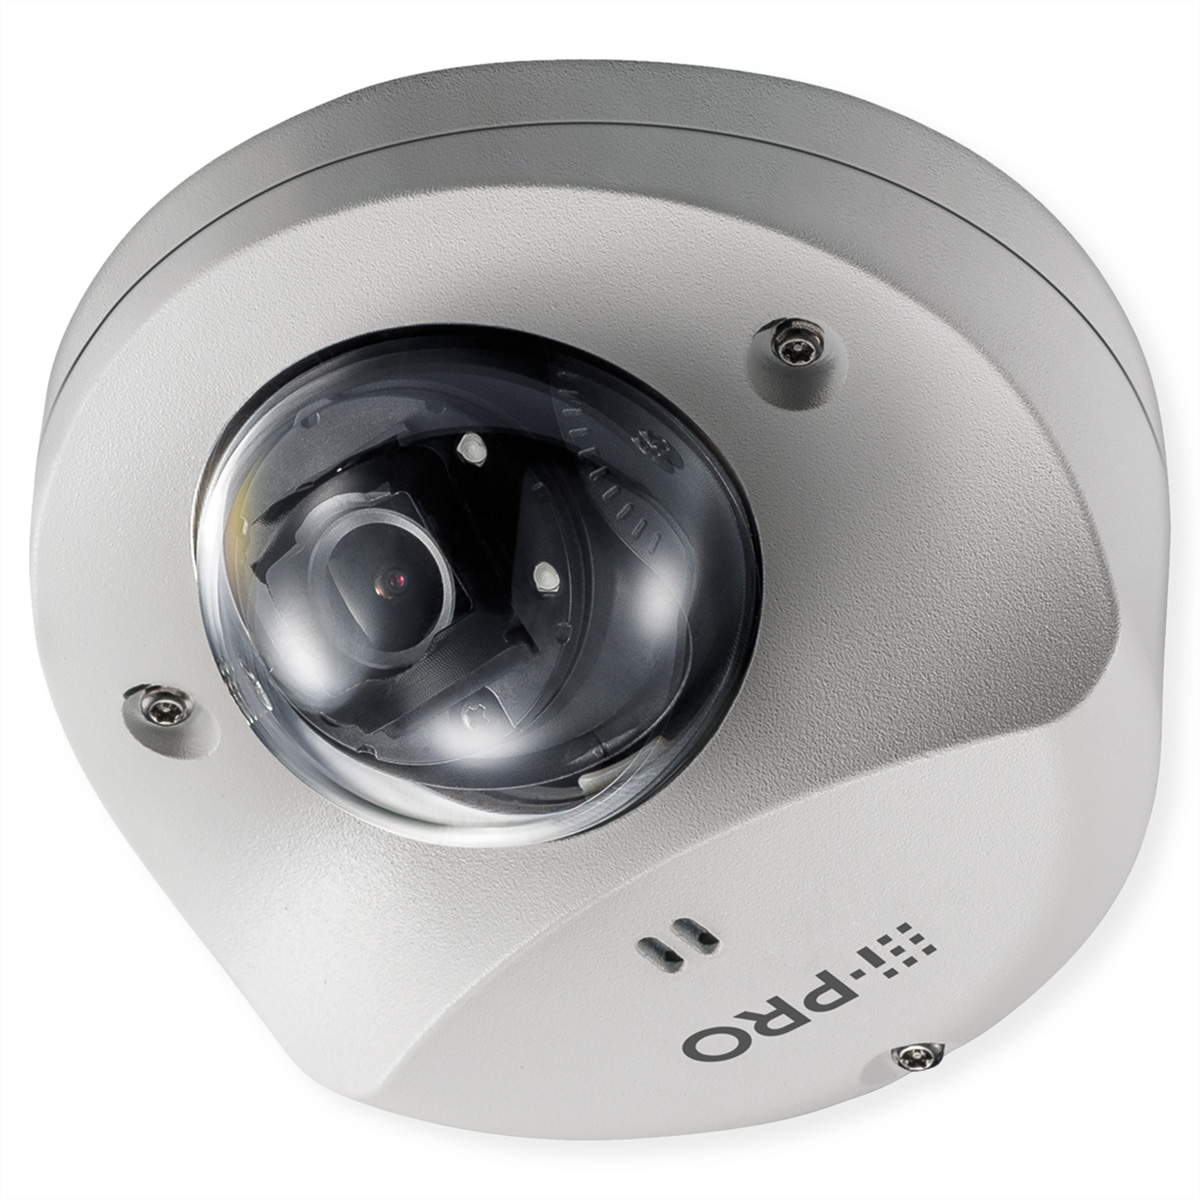 i-PRO Extreme WV-S3531L Fix Mini-Dome IP Kamera, Full-HD, IP66 und IK10